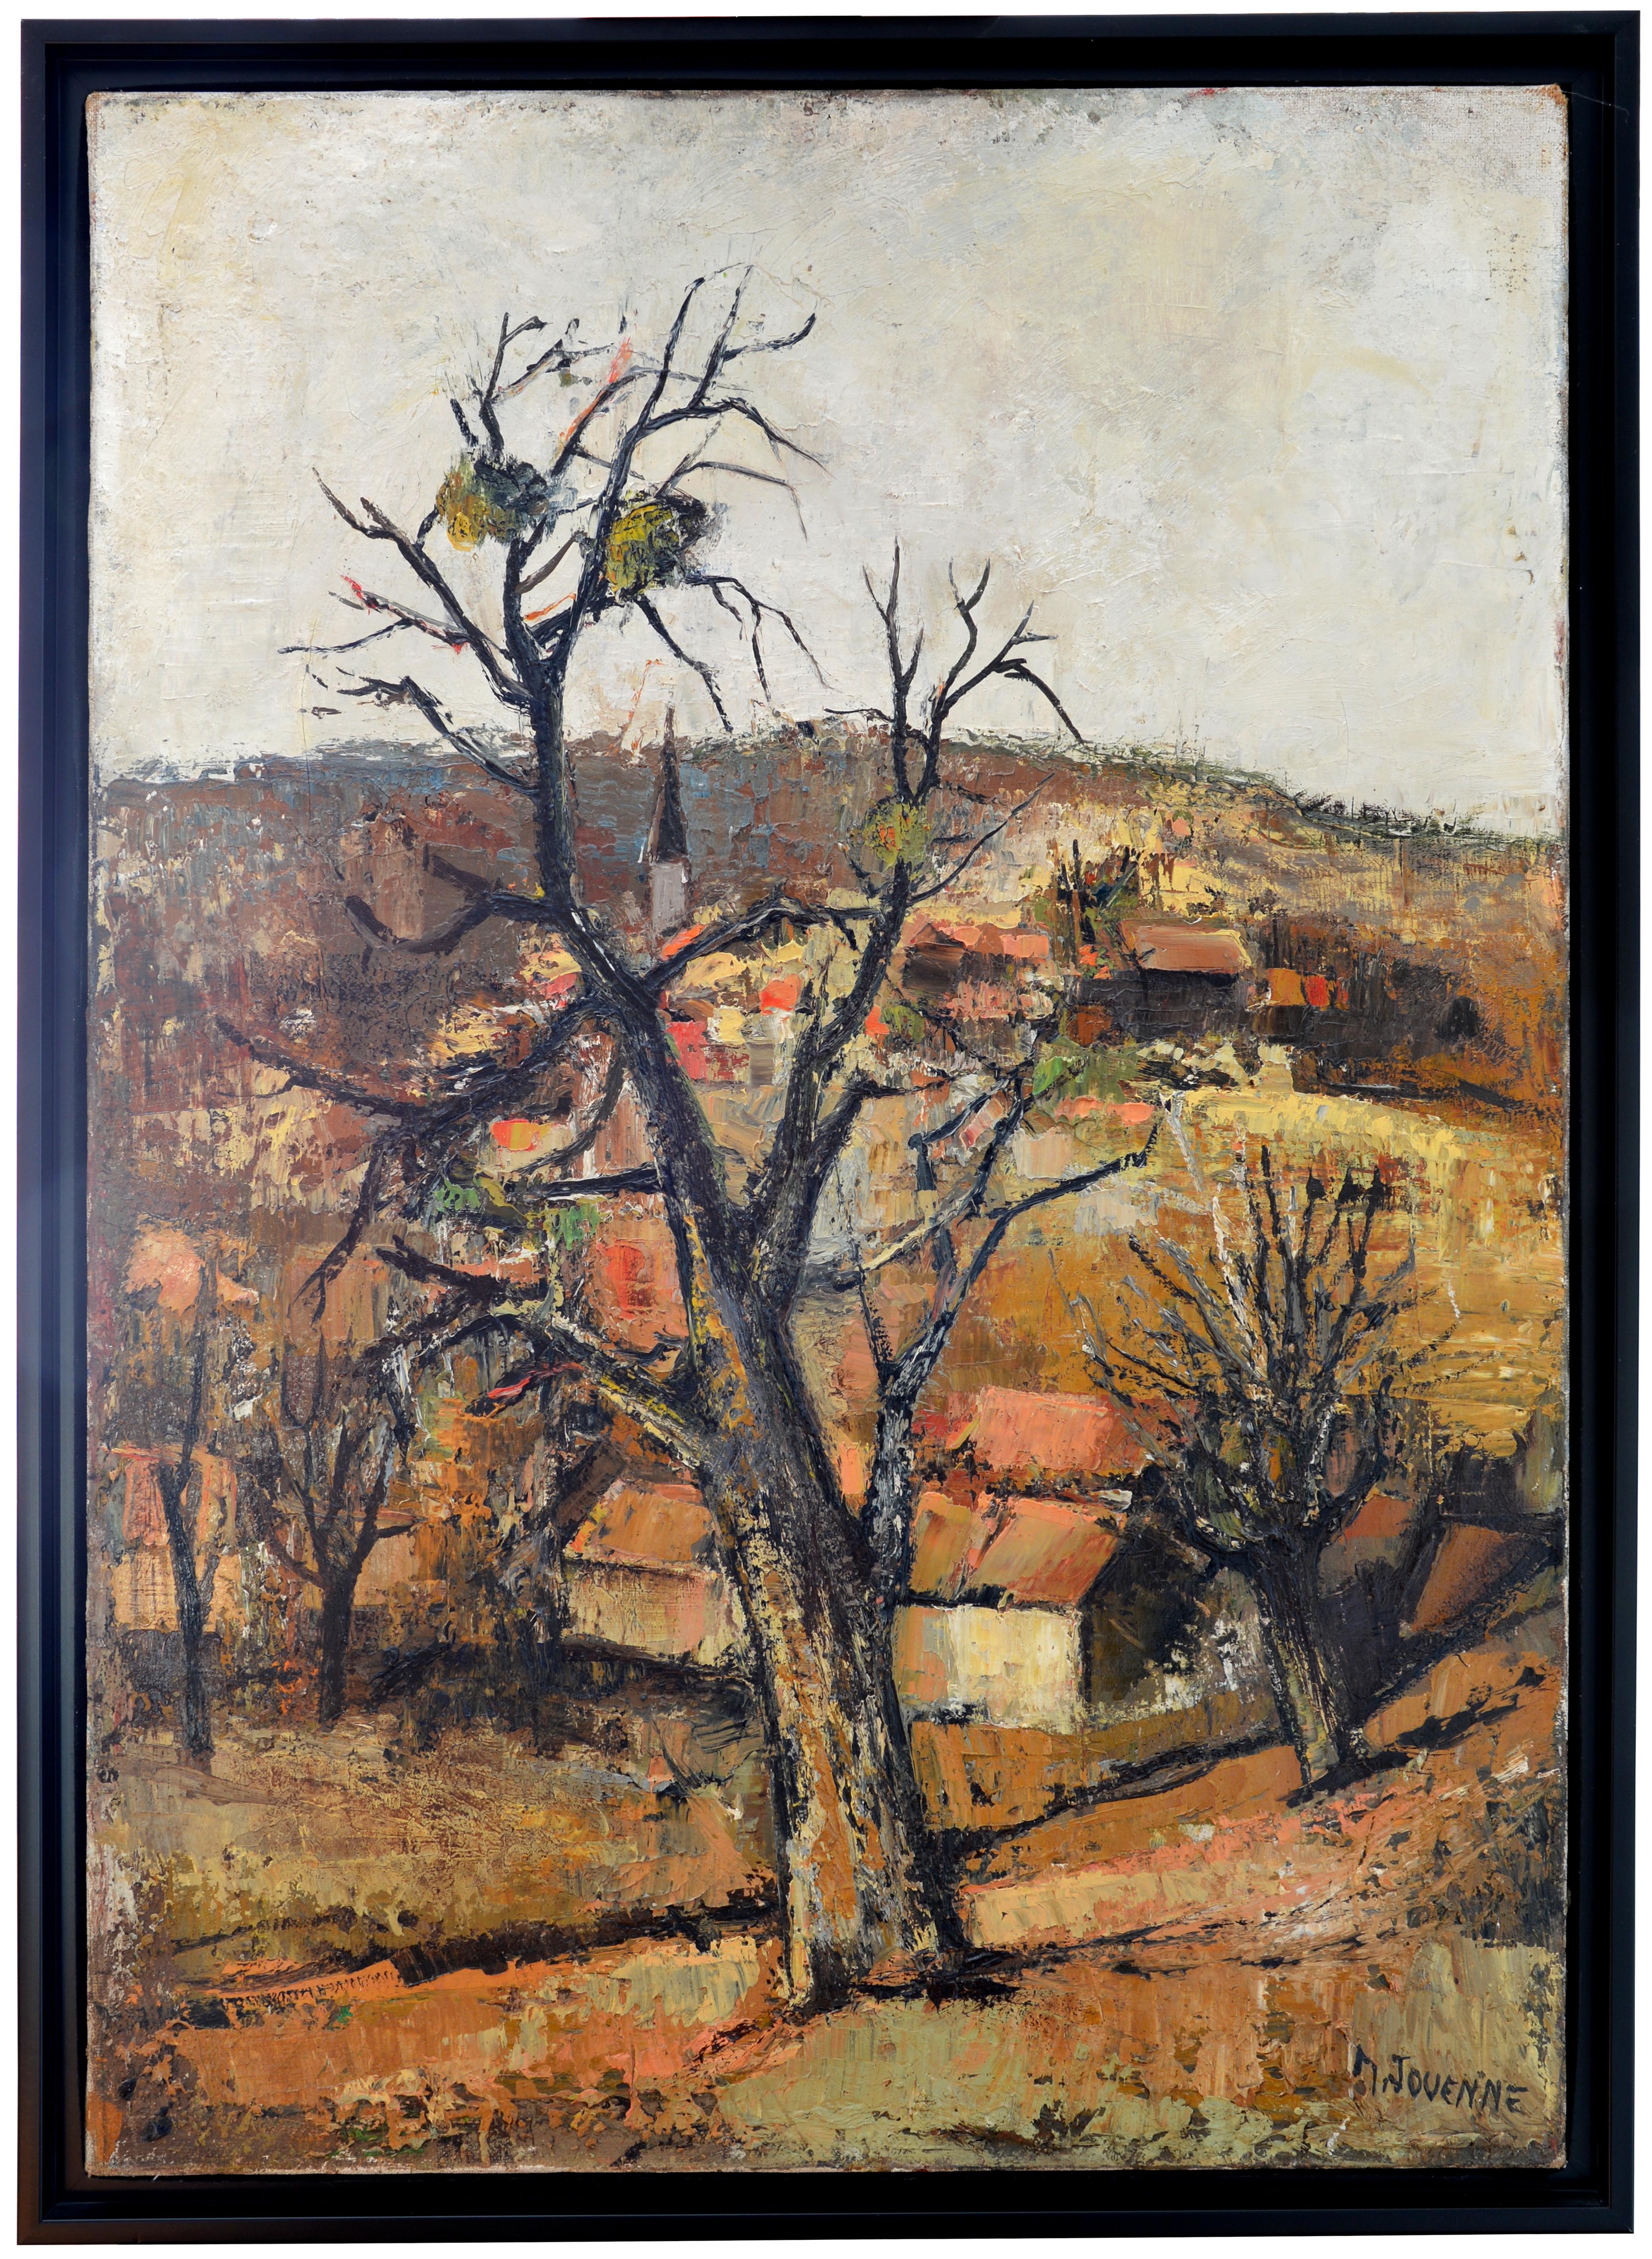 Landscape Painting Michel Jouenne - Village of Provence, huile sur toile